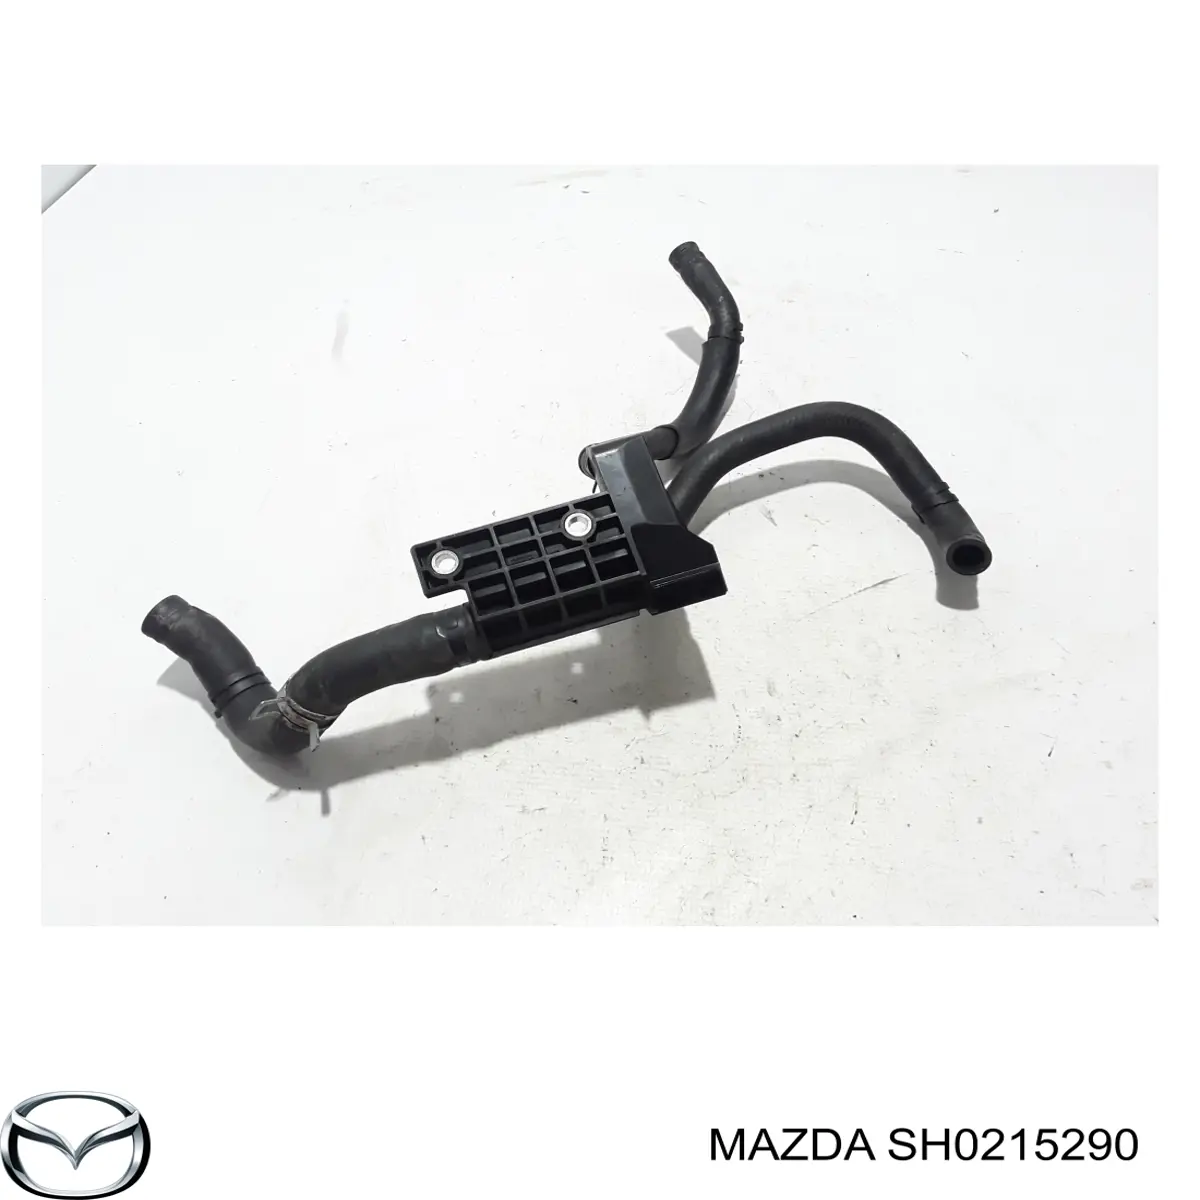 SH0215290 Mazda flange do sistema de esfriamento (união em t)